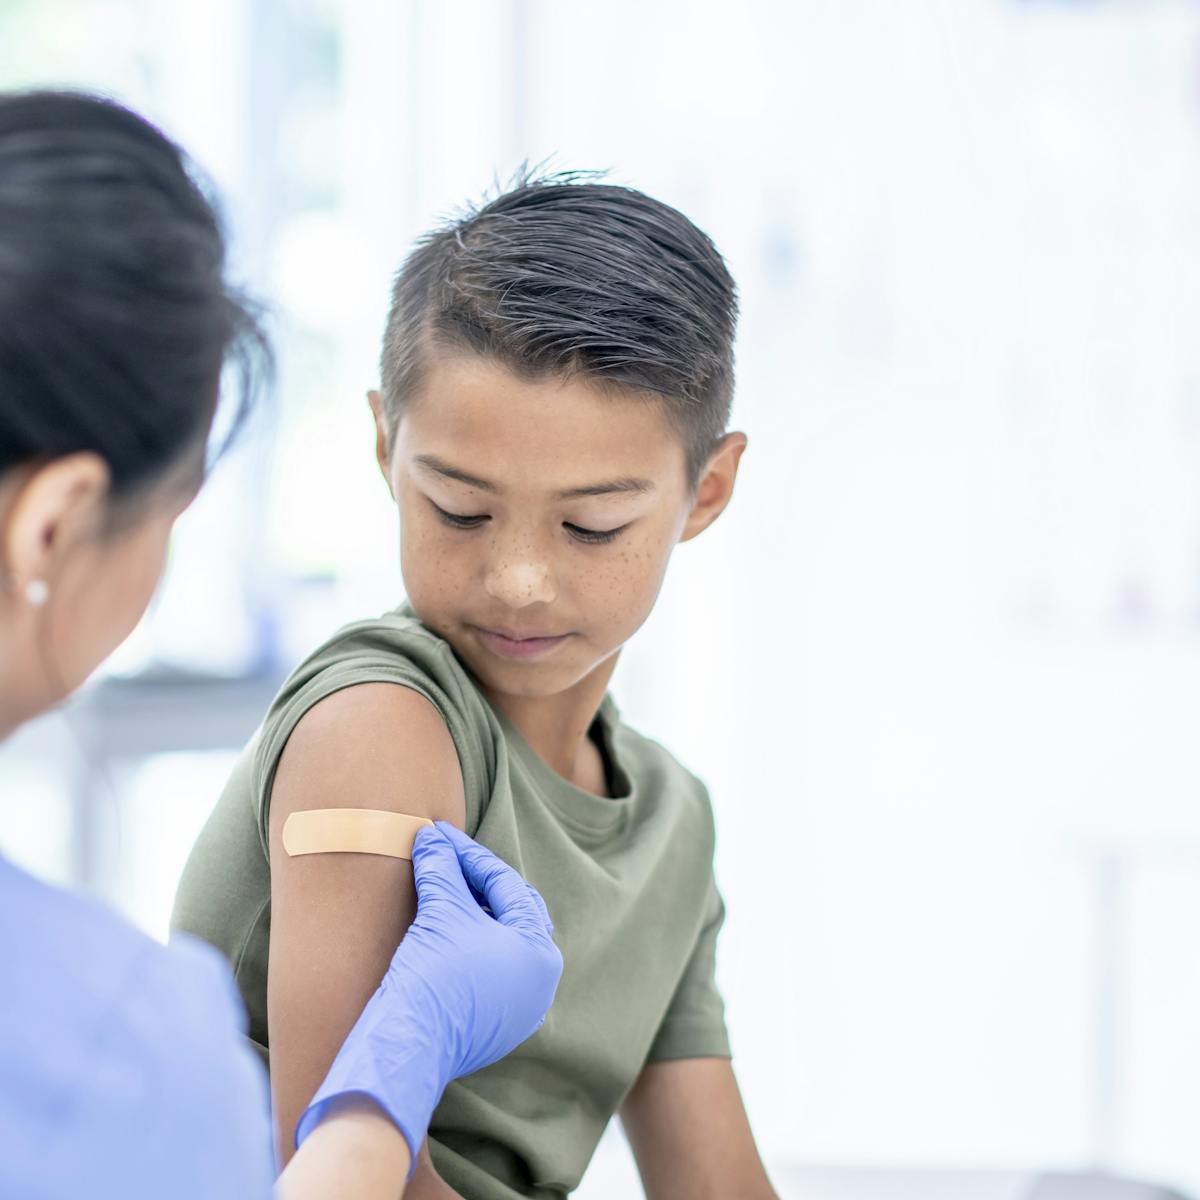 Quand Les Enfants Seront Ils Vaccines Voici Les 5 Questions Que Les Parents Se Posent